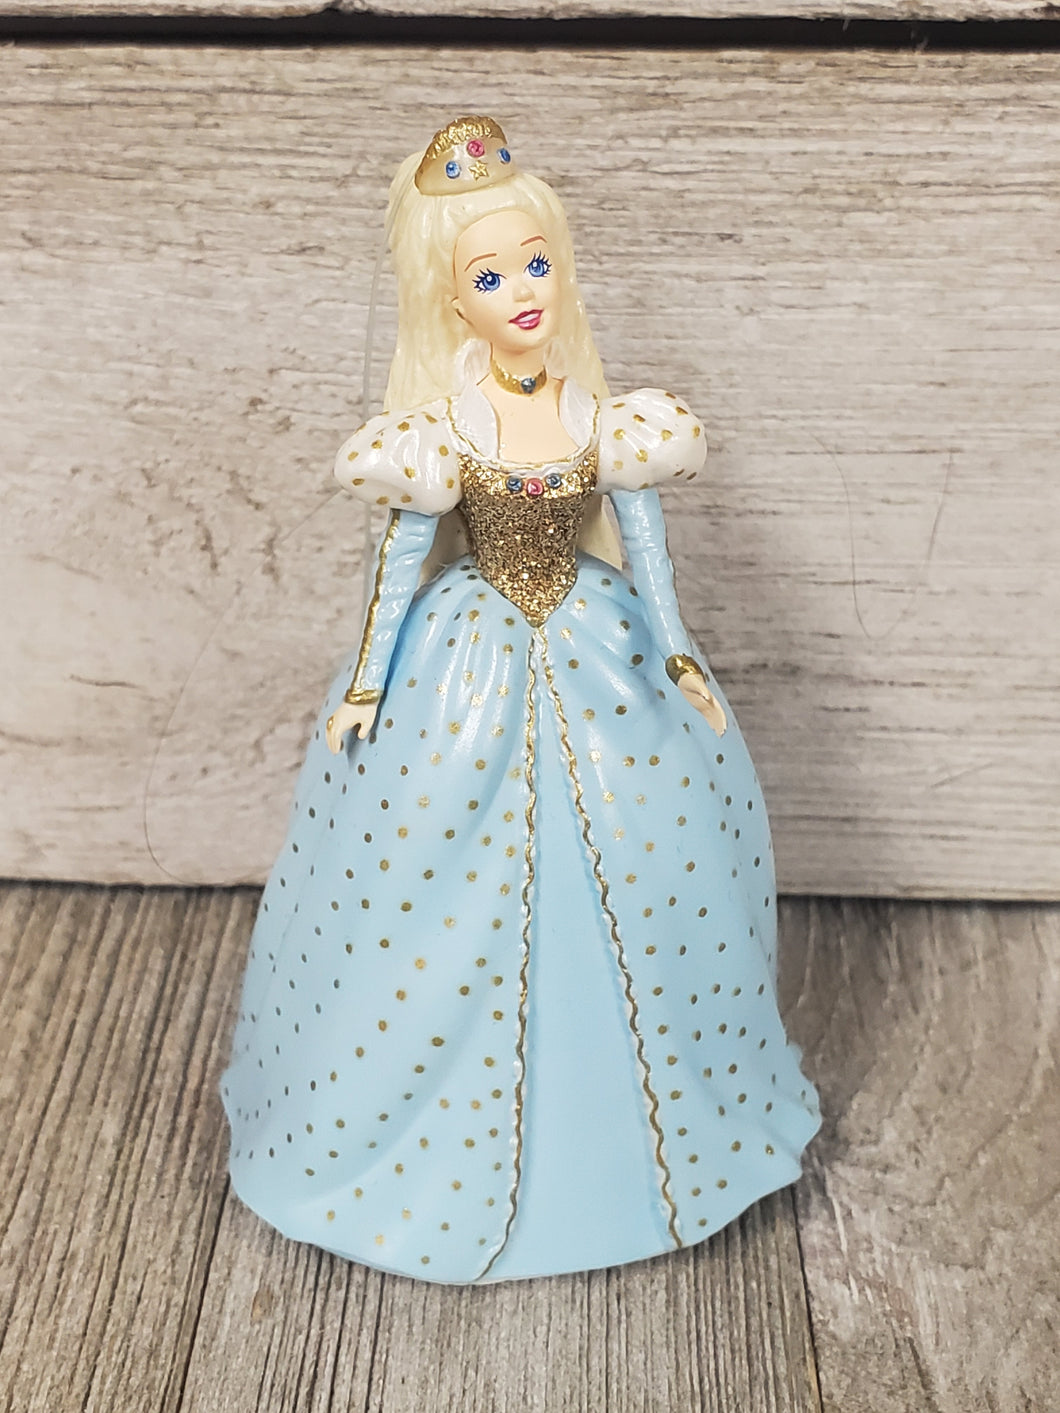 Barbie as Cinderella Children's Series #3 1999 - My Wyo Designs